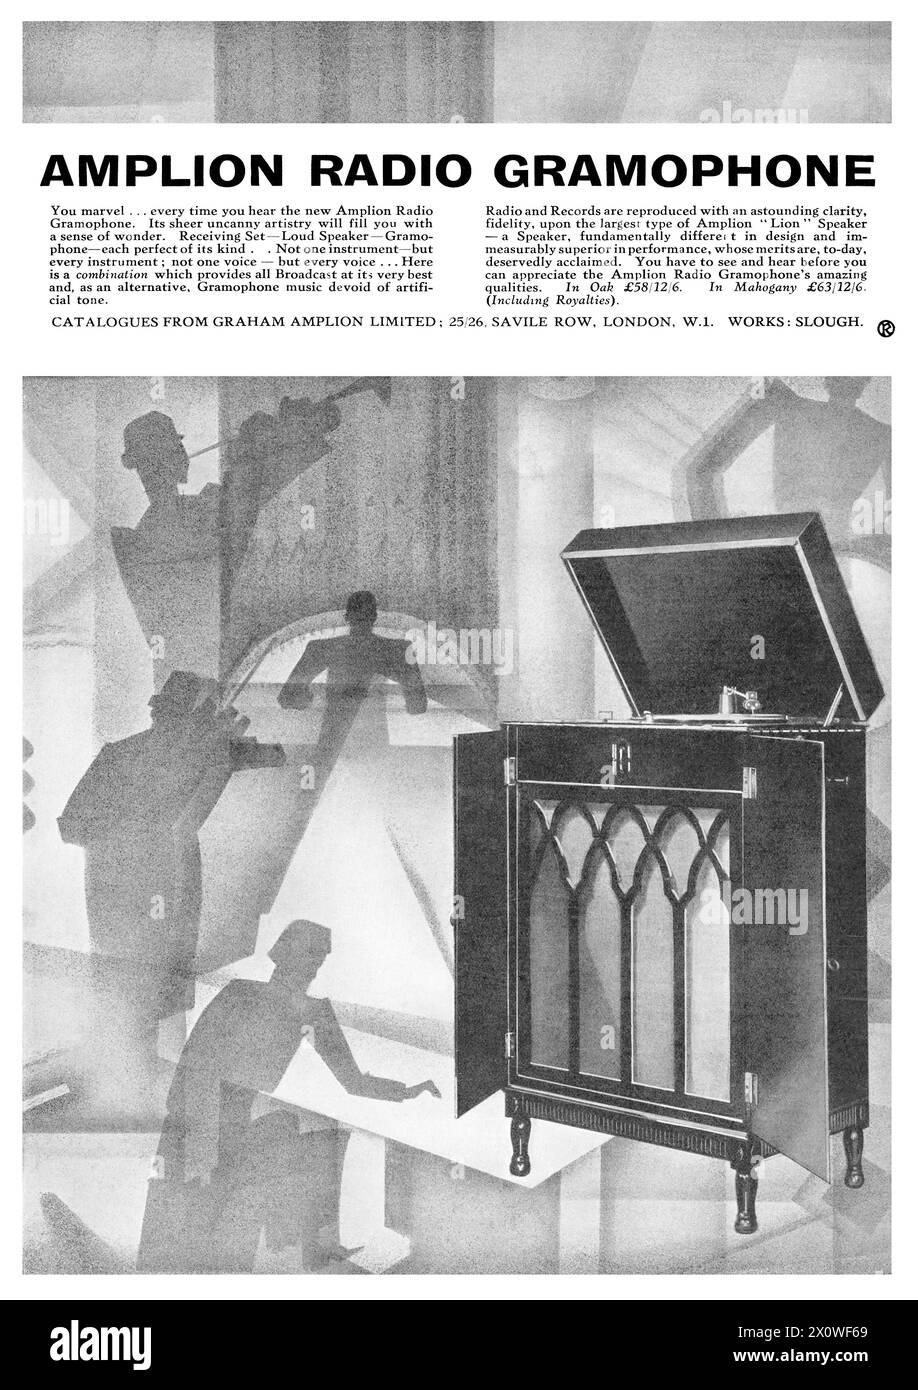 1928 pubblicità britannica per il grammofono radiofonico Amplion. Foto Stock